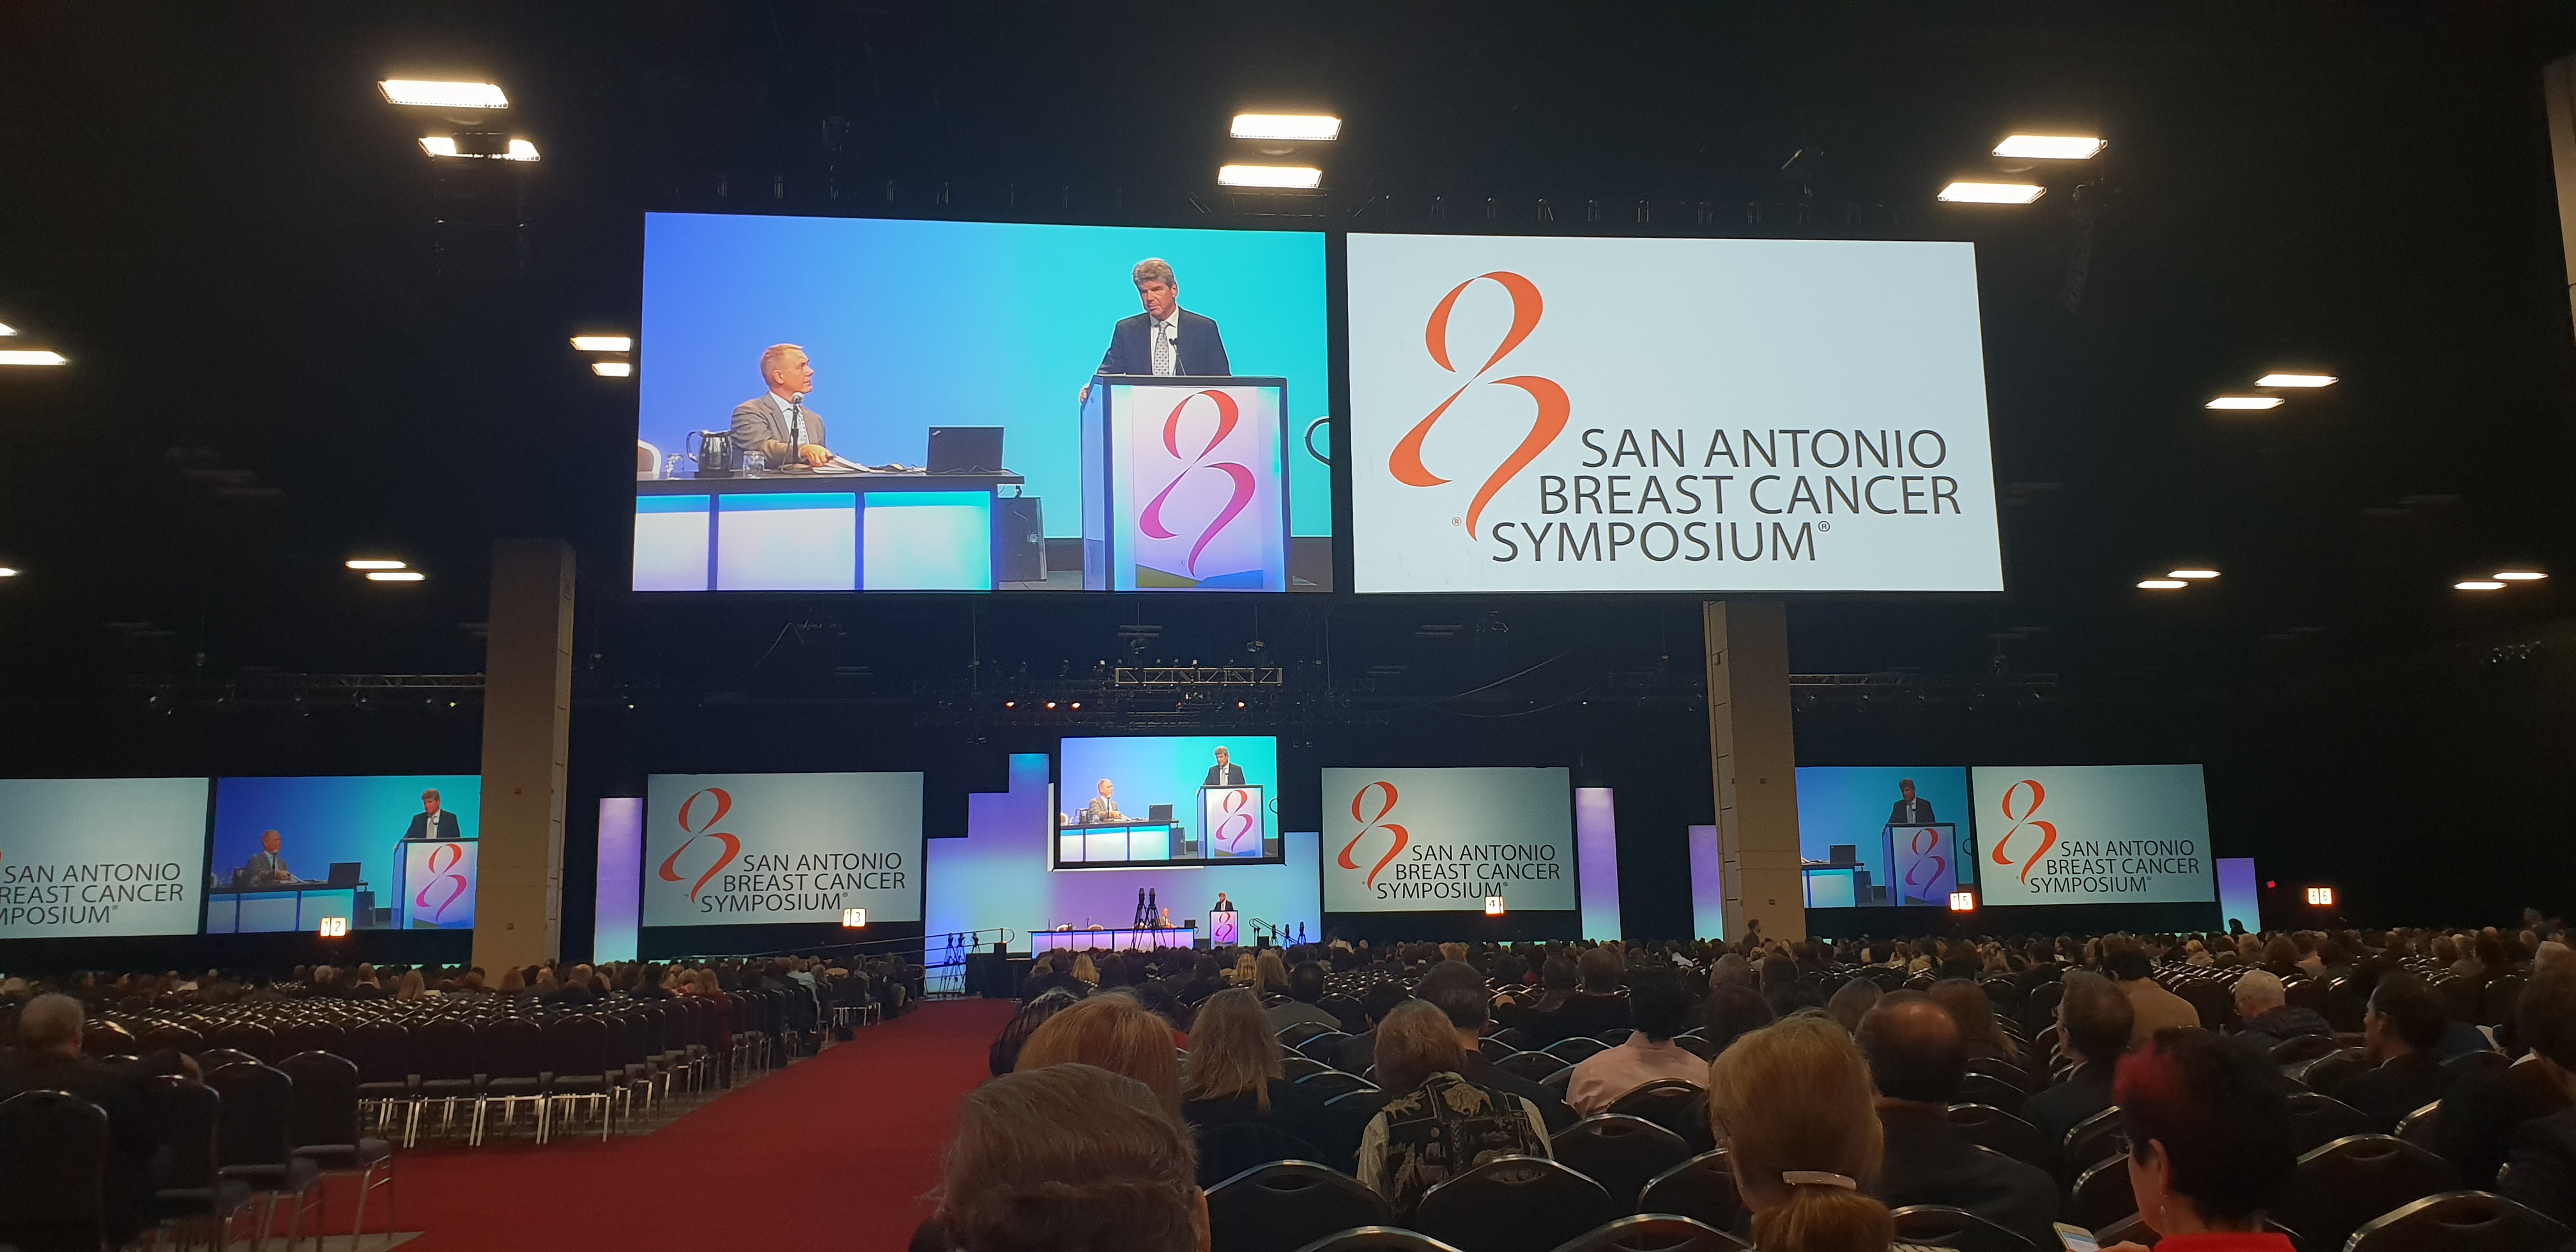 Специалисты хирургического отделения опухолей молочной железы представили постерный доклад на конференции в Сан-Антонио (SABCS) 2018